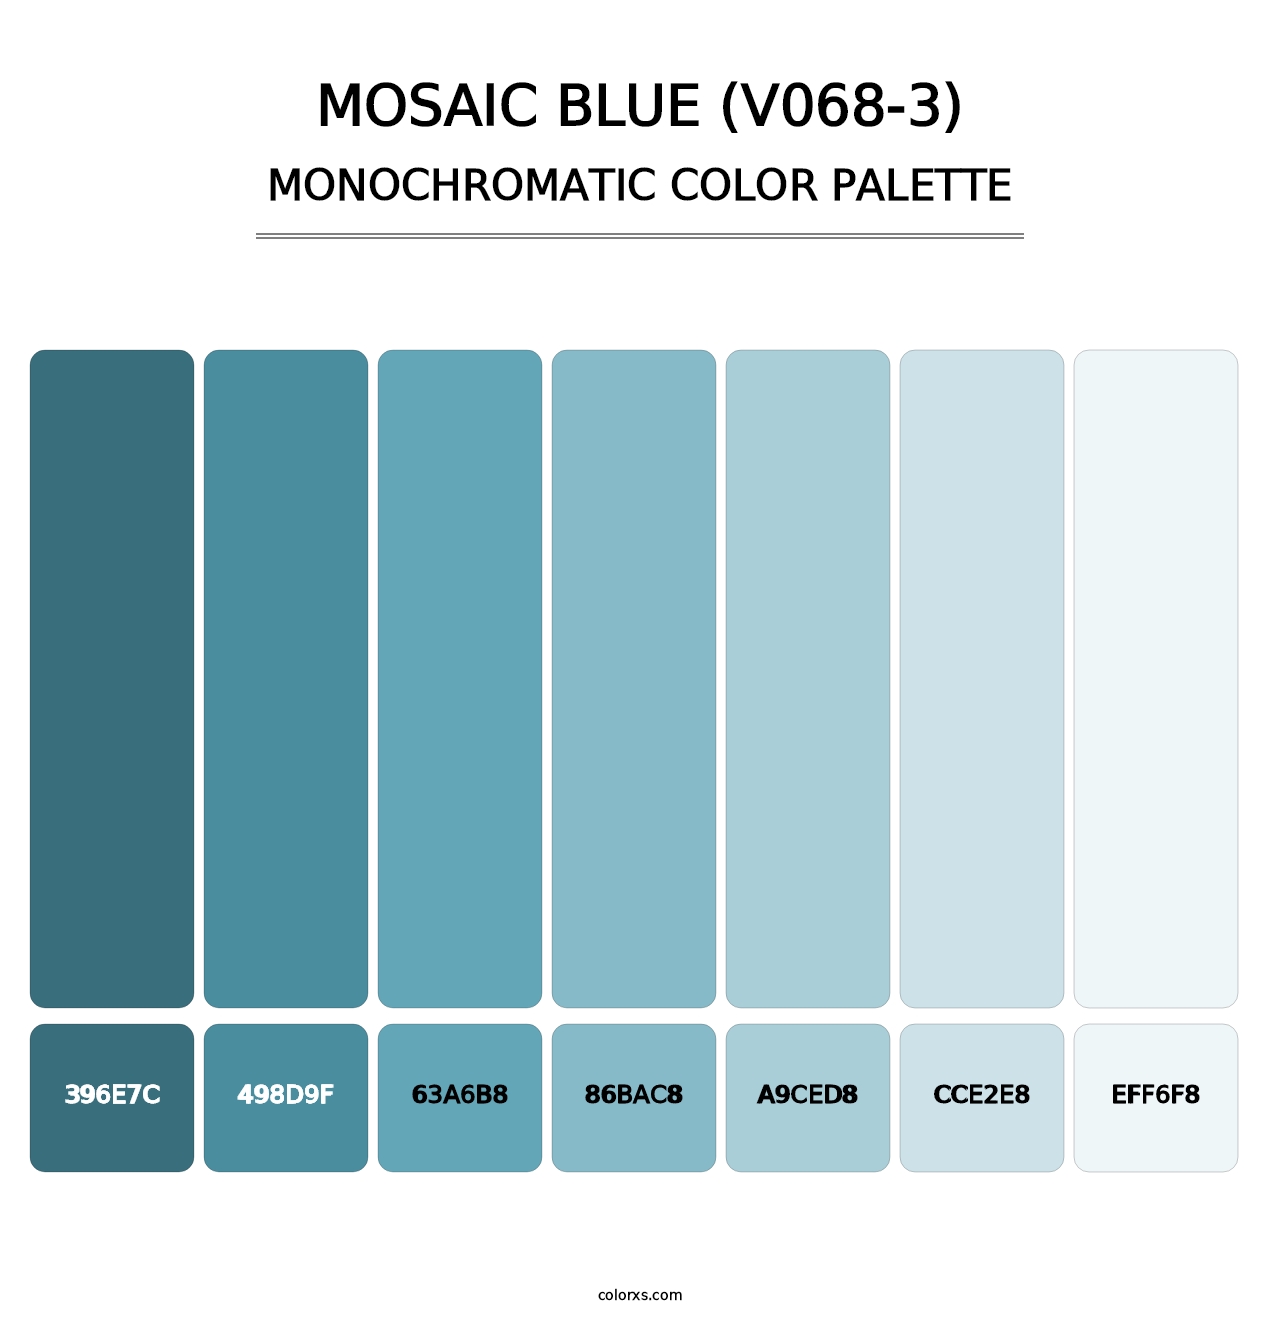 Mosaic Blue (V068-3) - Monochromatic Color Palette